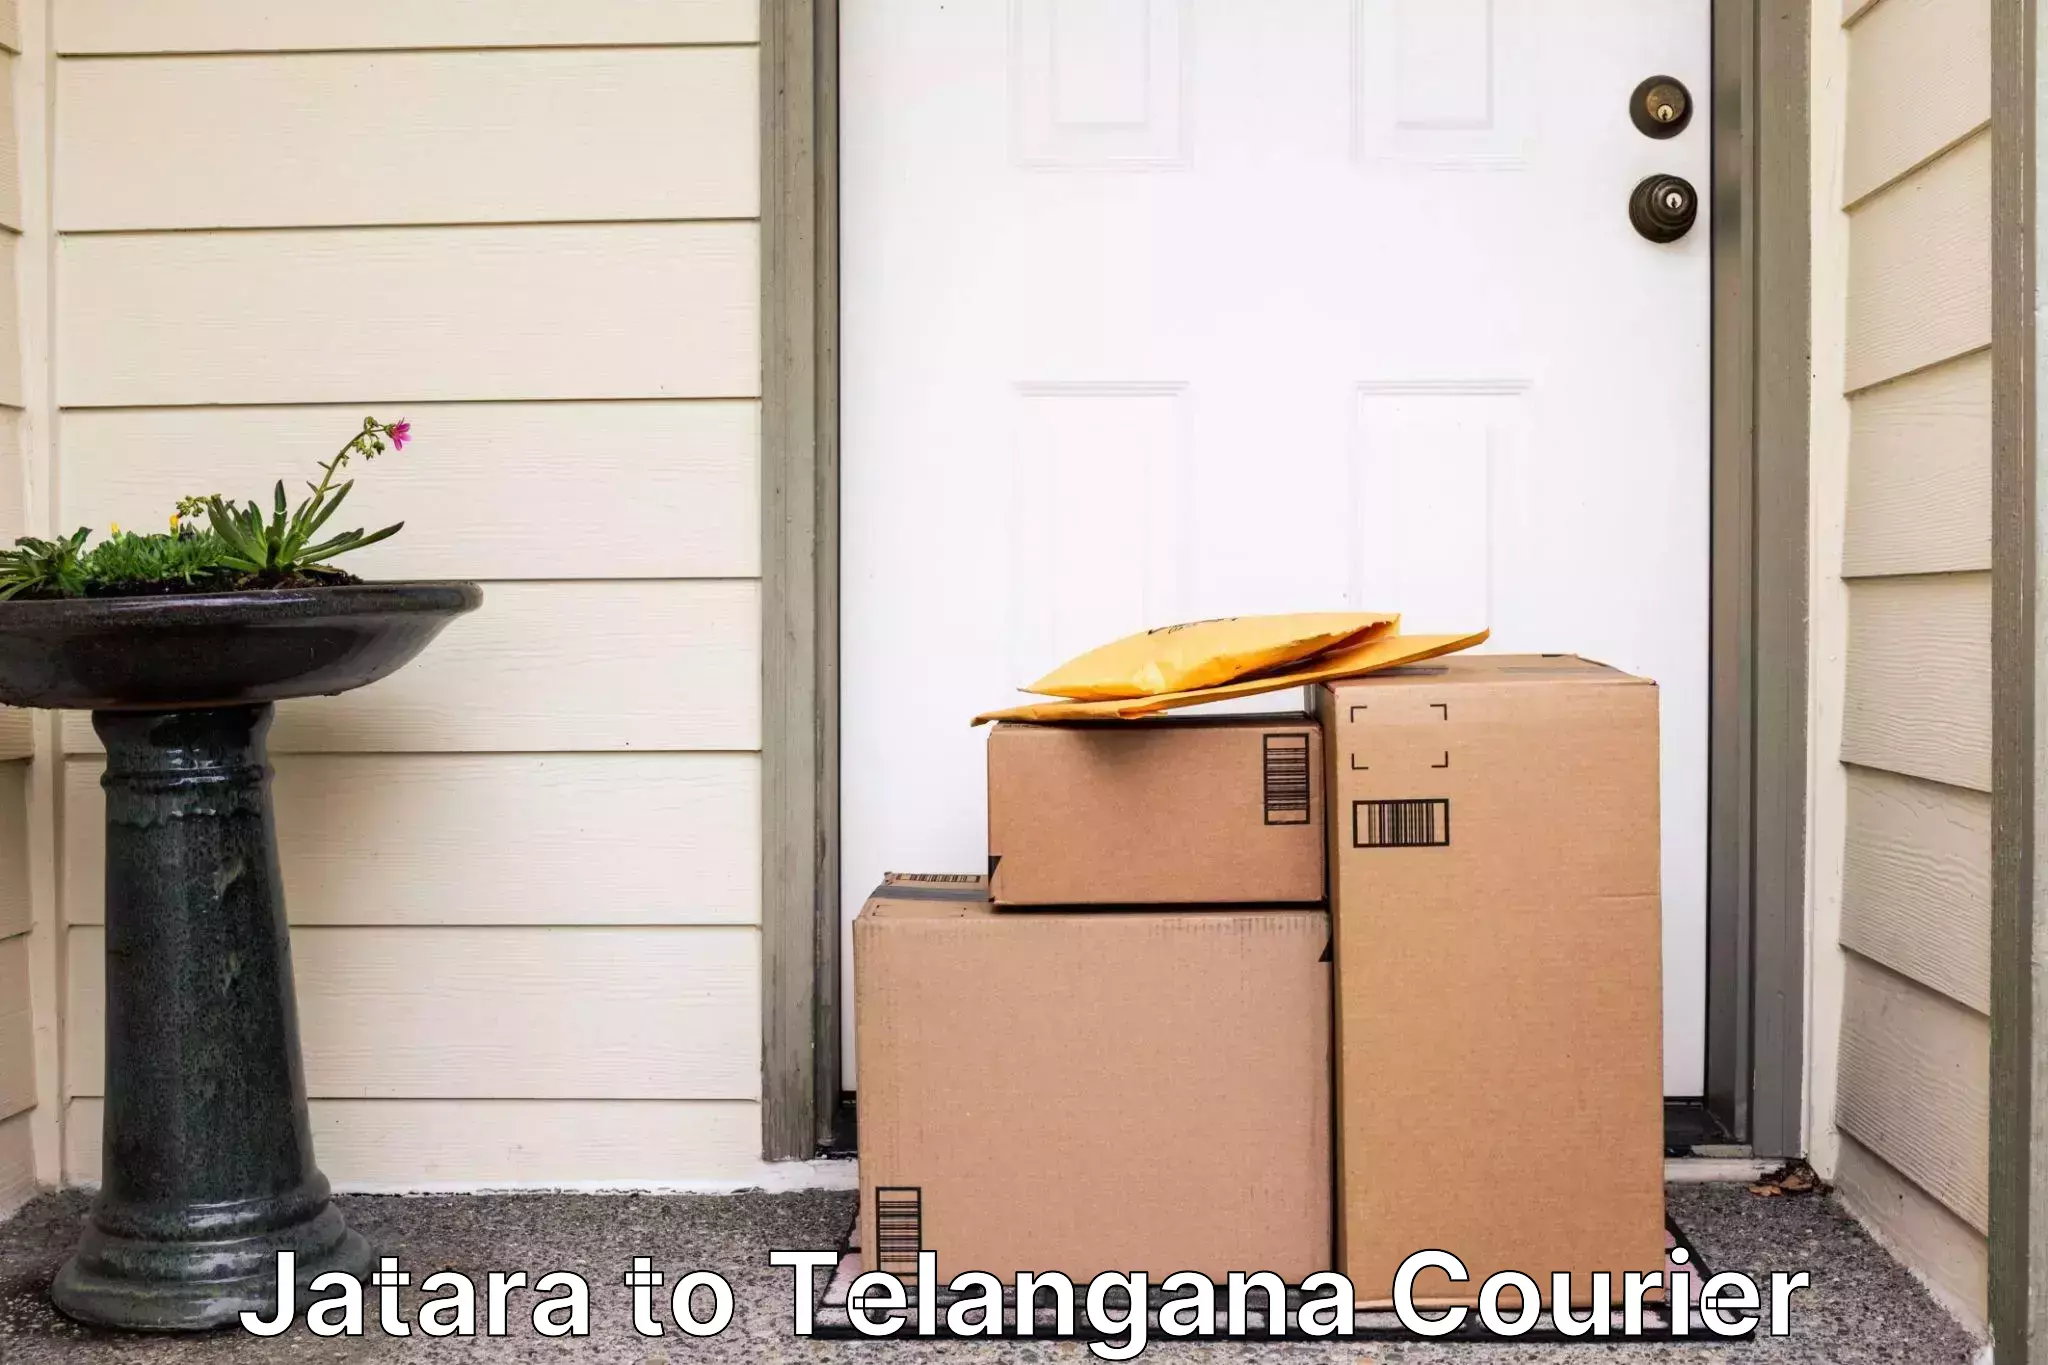 Next day courier Jatara to Telangana